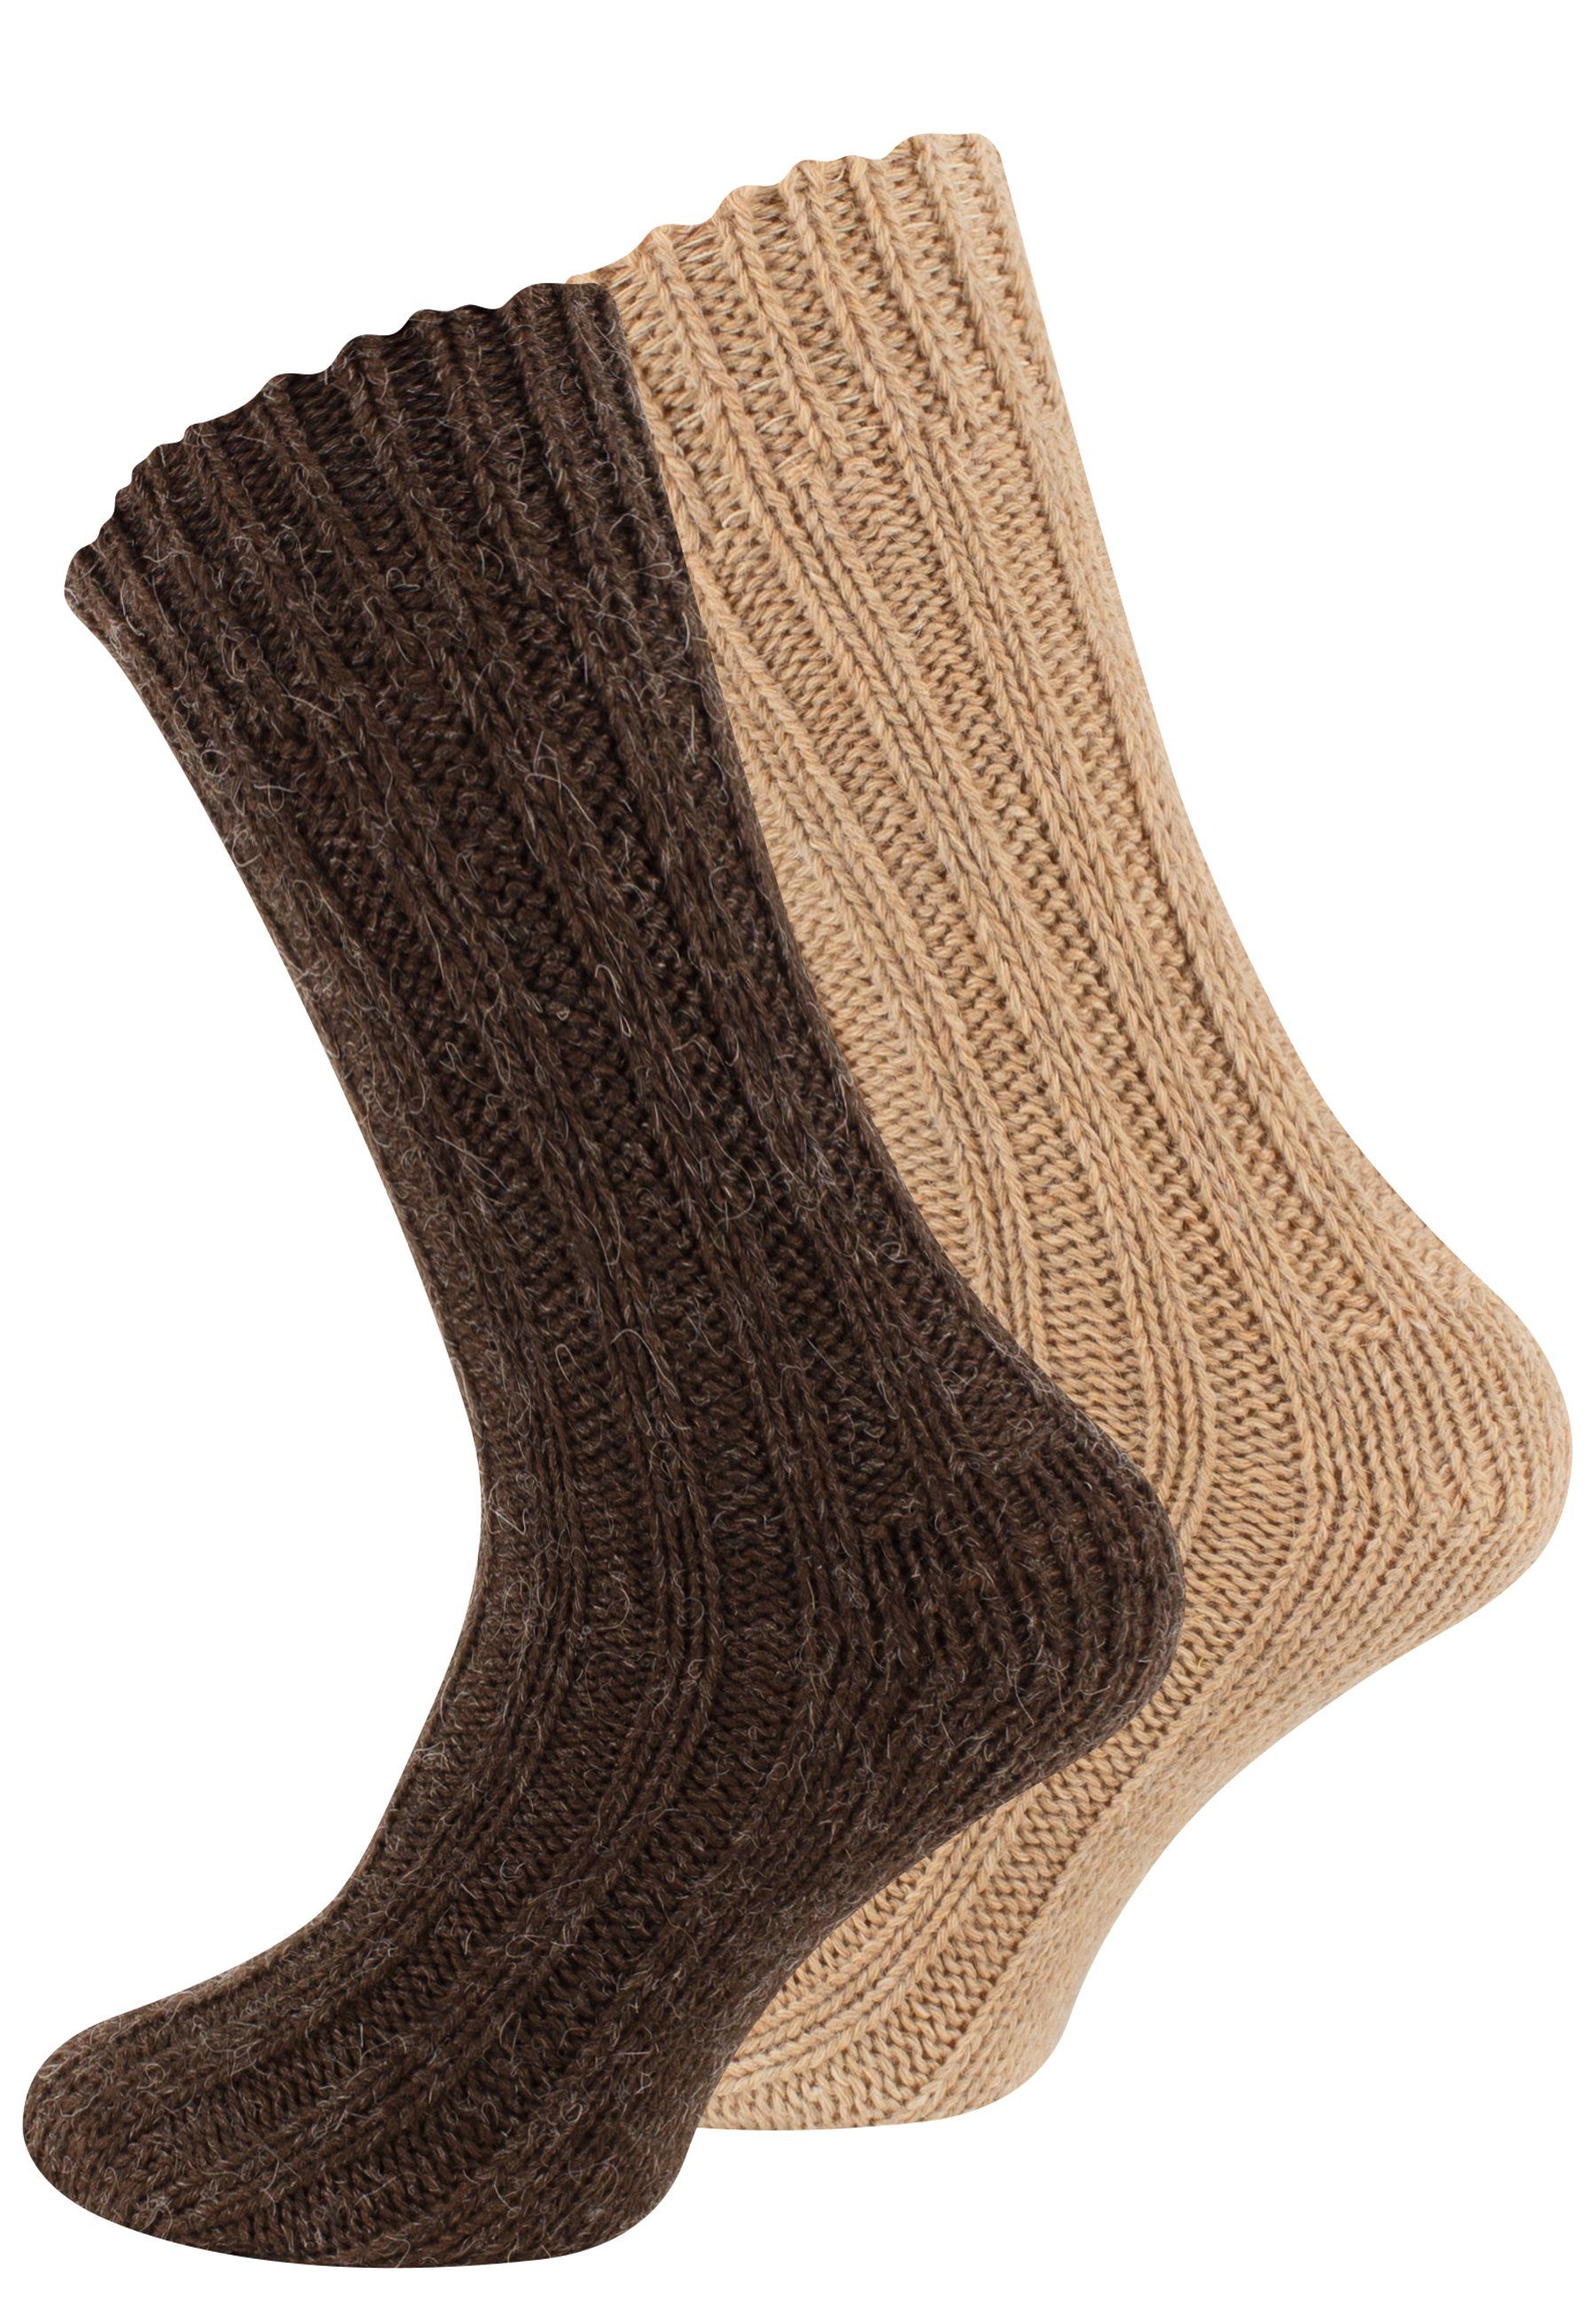 Cotton Prime® Socken Unisex Alpakasocken (4-Paar) ökologisch gefärbt und vorgewaschen Braun